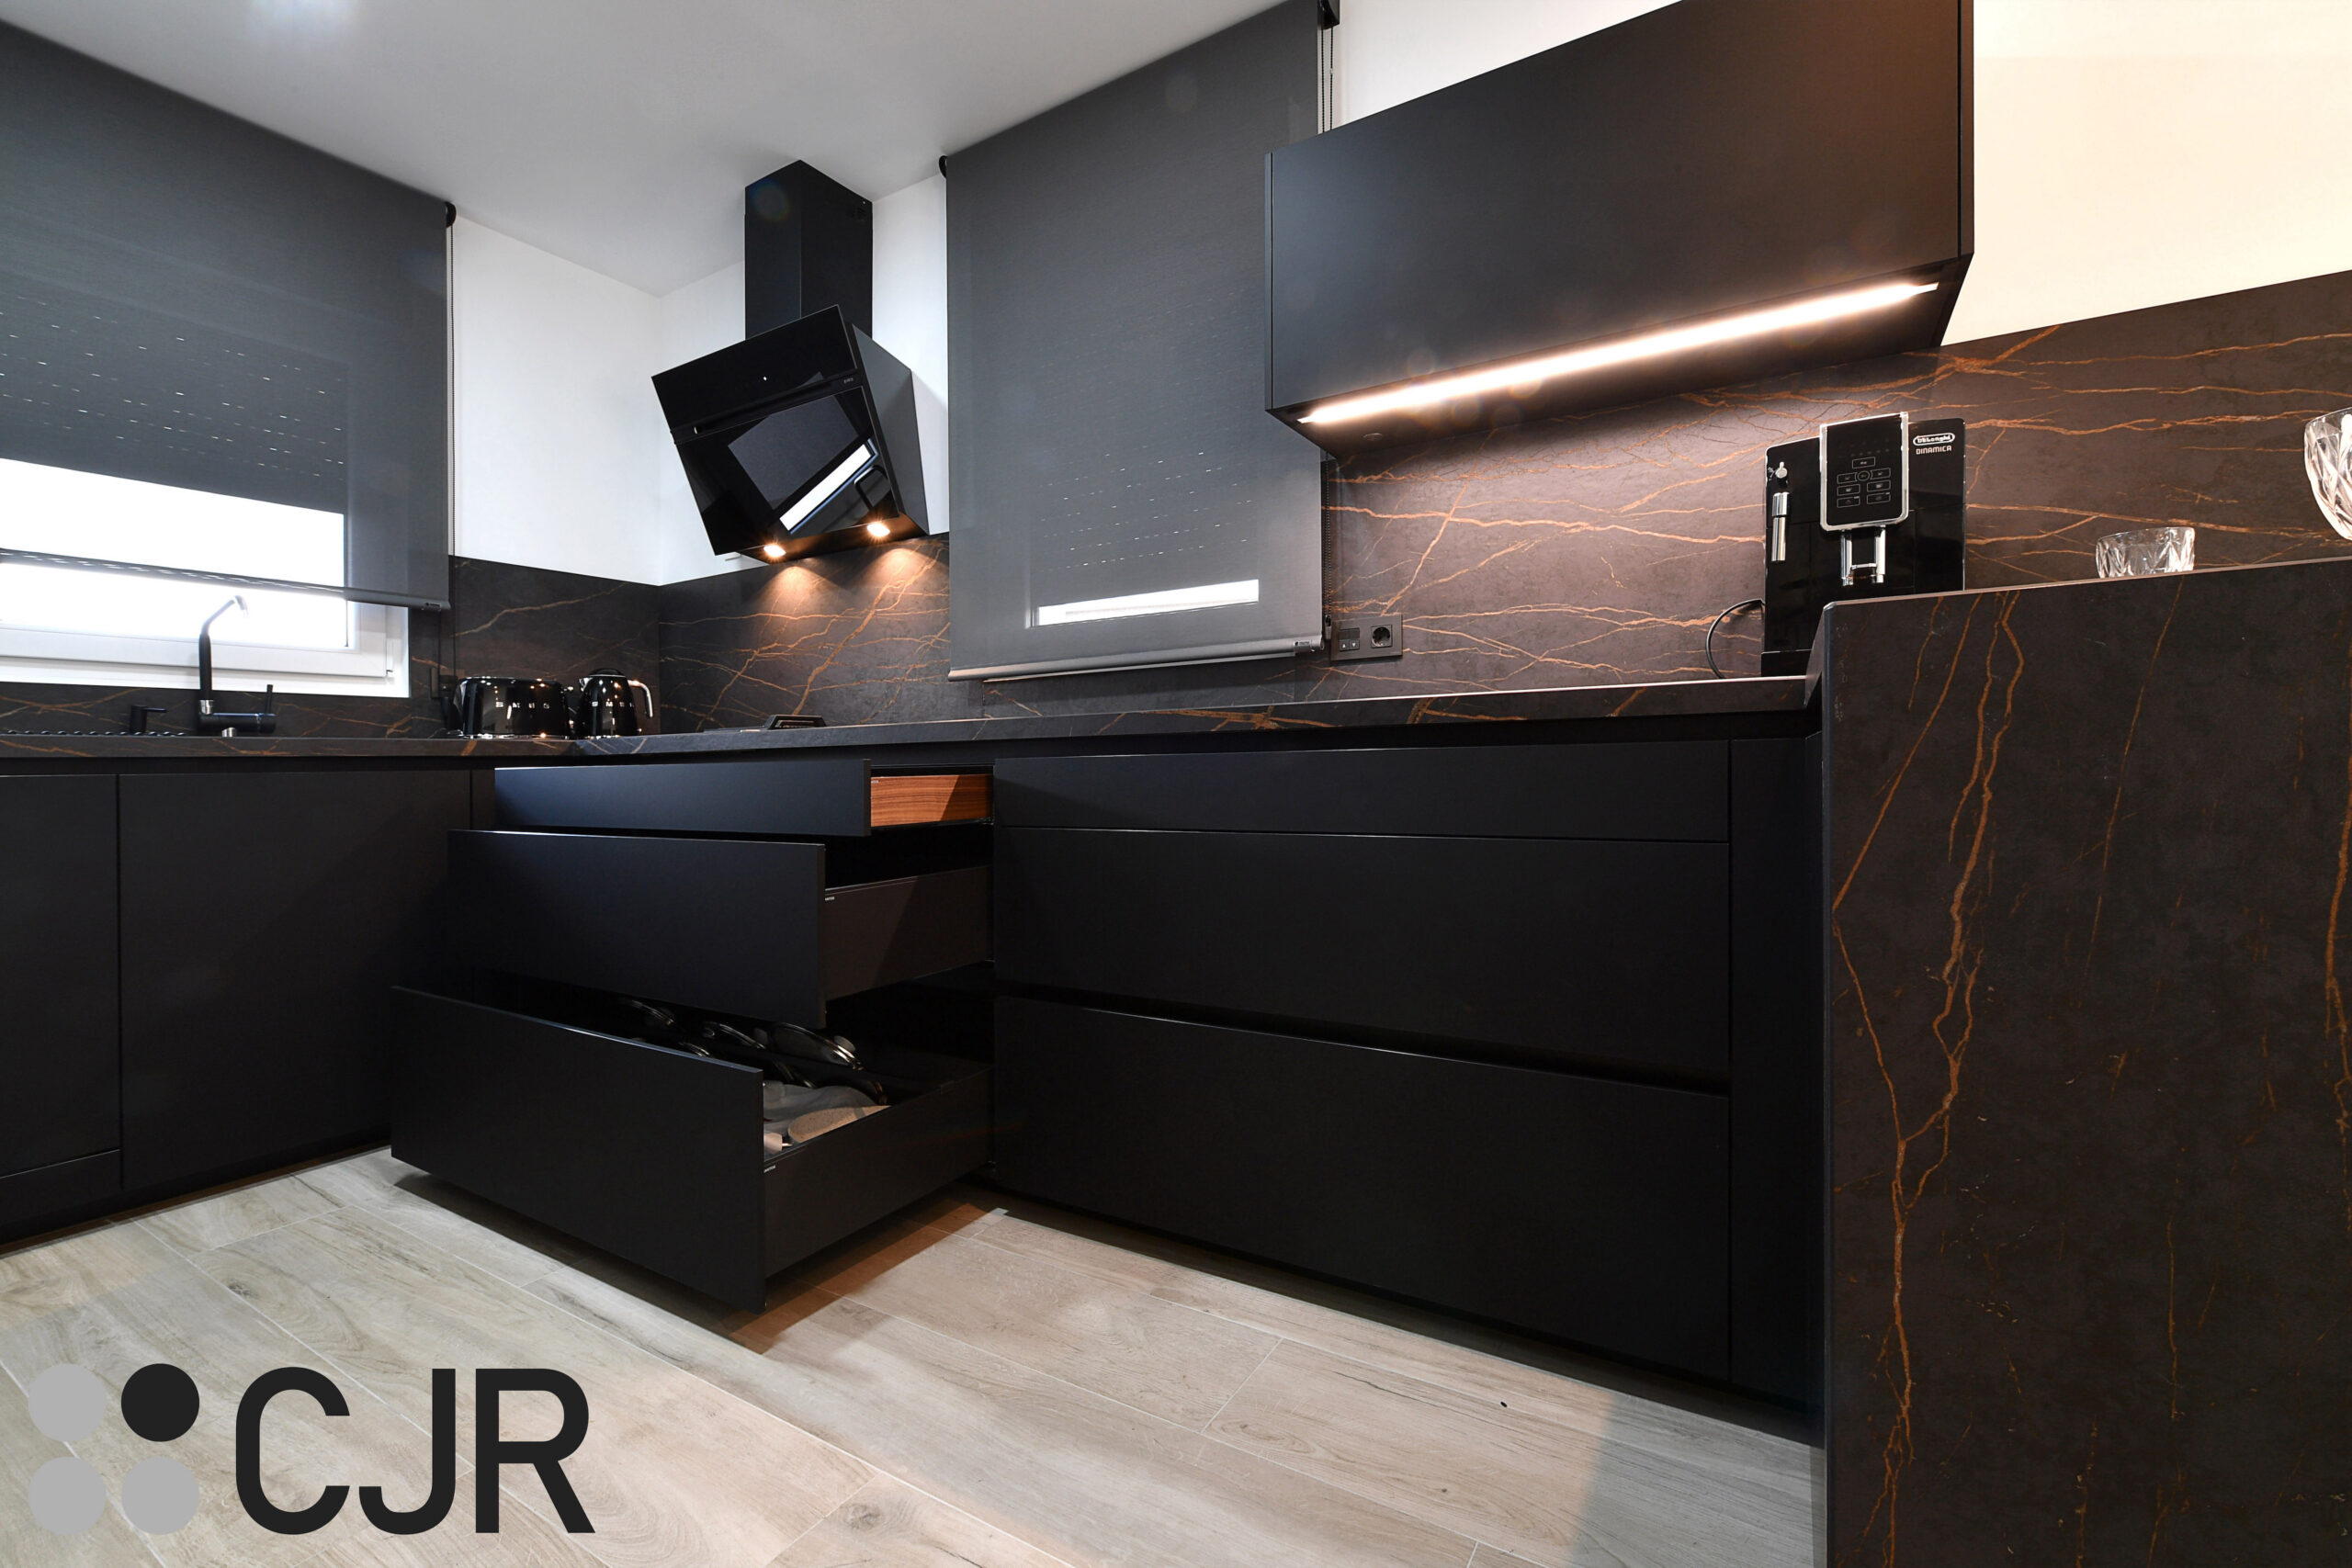 gavetas de cocina en negro mate con el interior en madera cjr